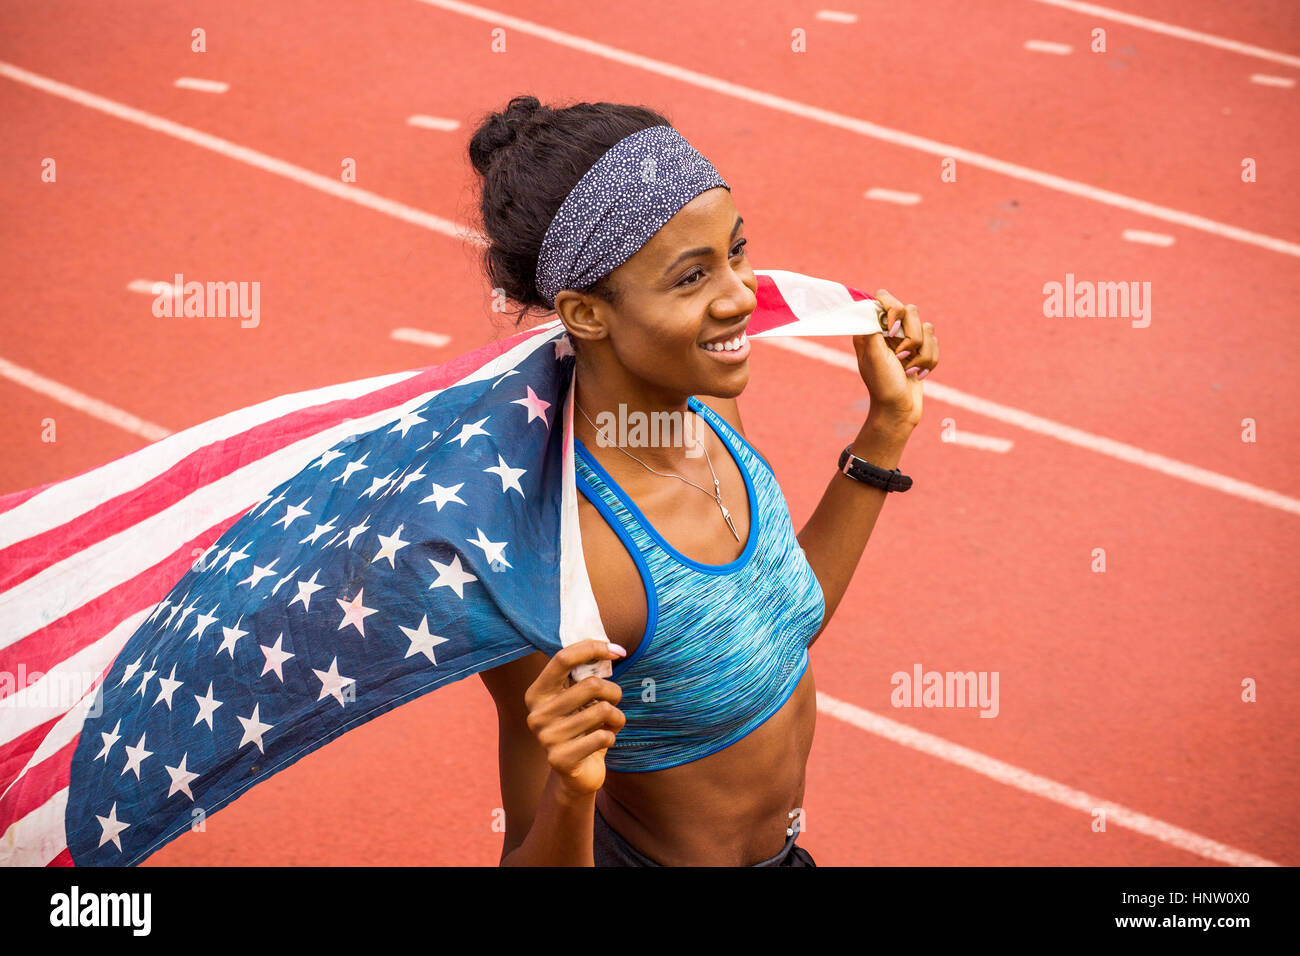 Lächelnd schwarzer Athlet Holding amerikanische Flagge auf dem richtigen Weg Stockfoto